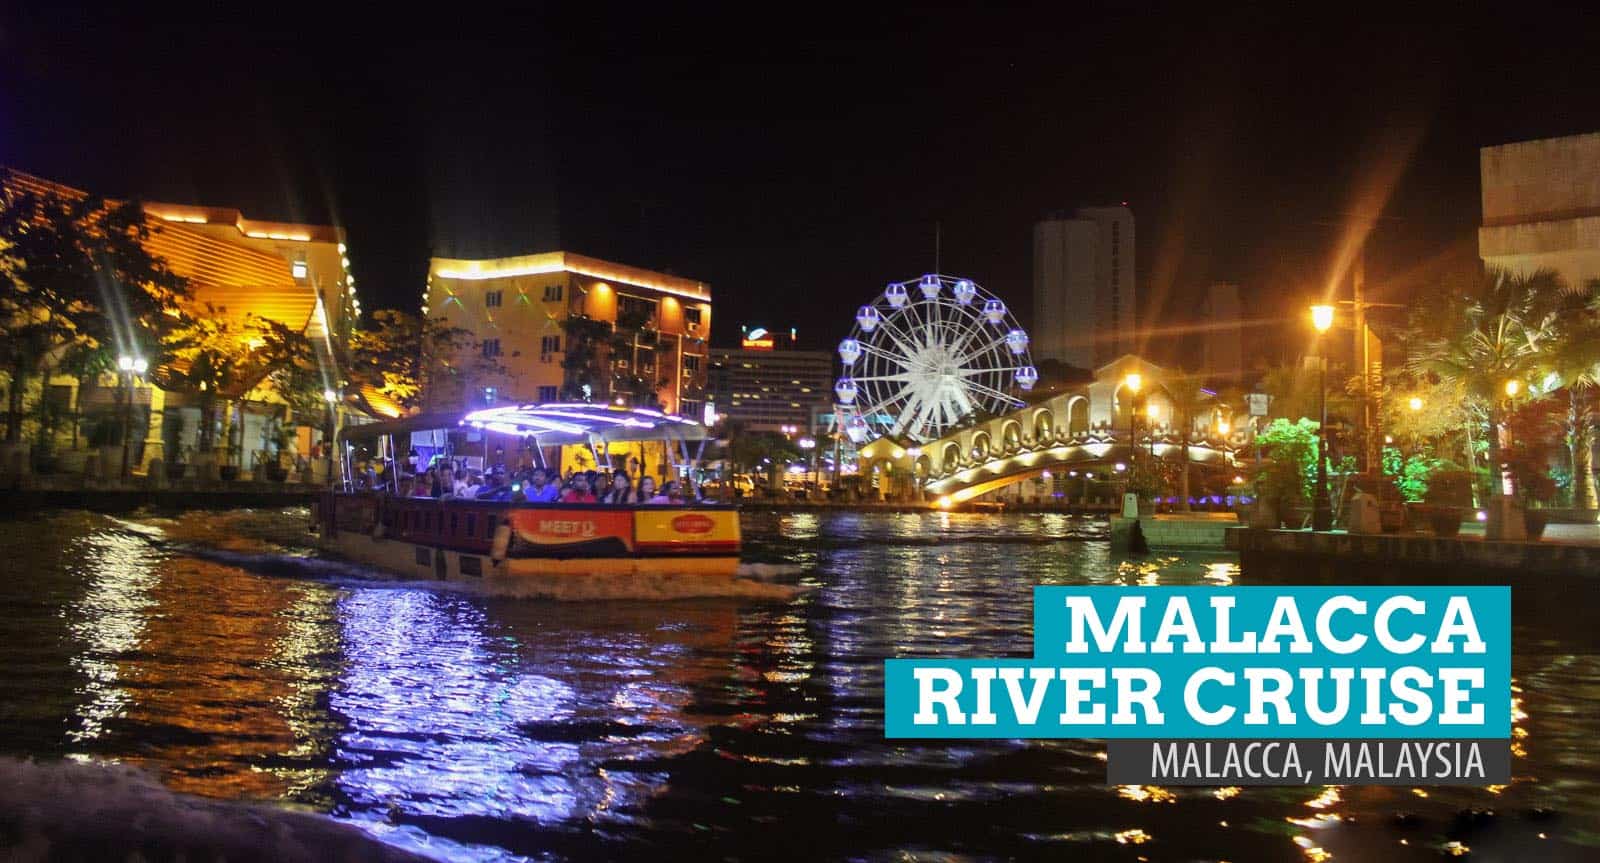 马来西亚马六甲河游船:穿越灯光和色彩